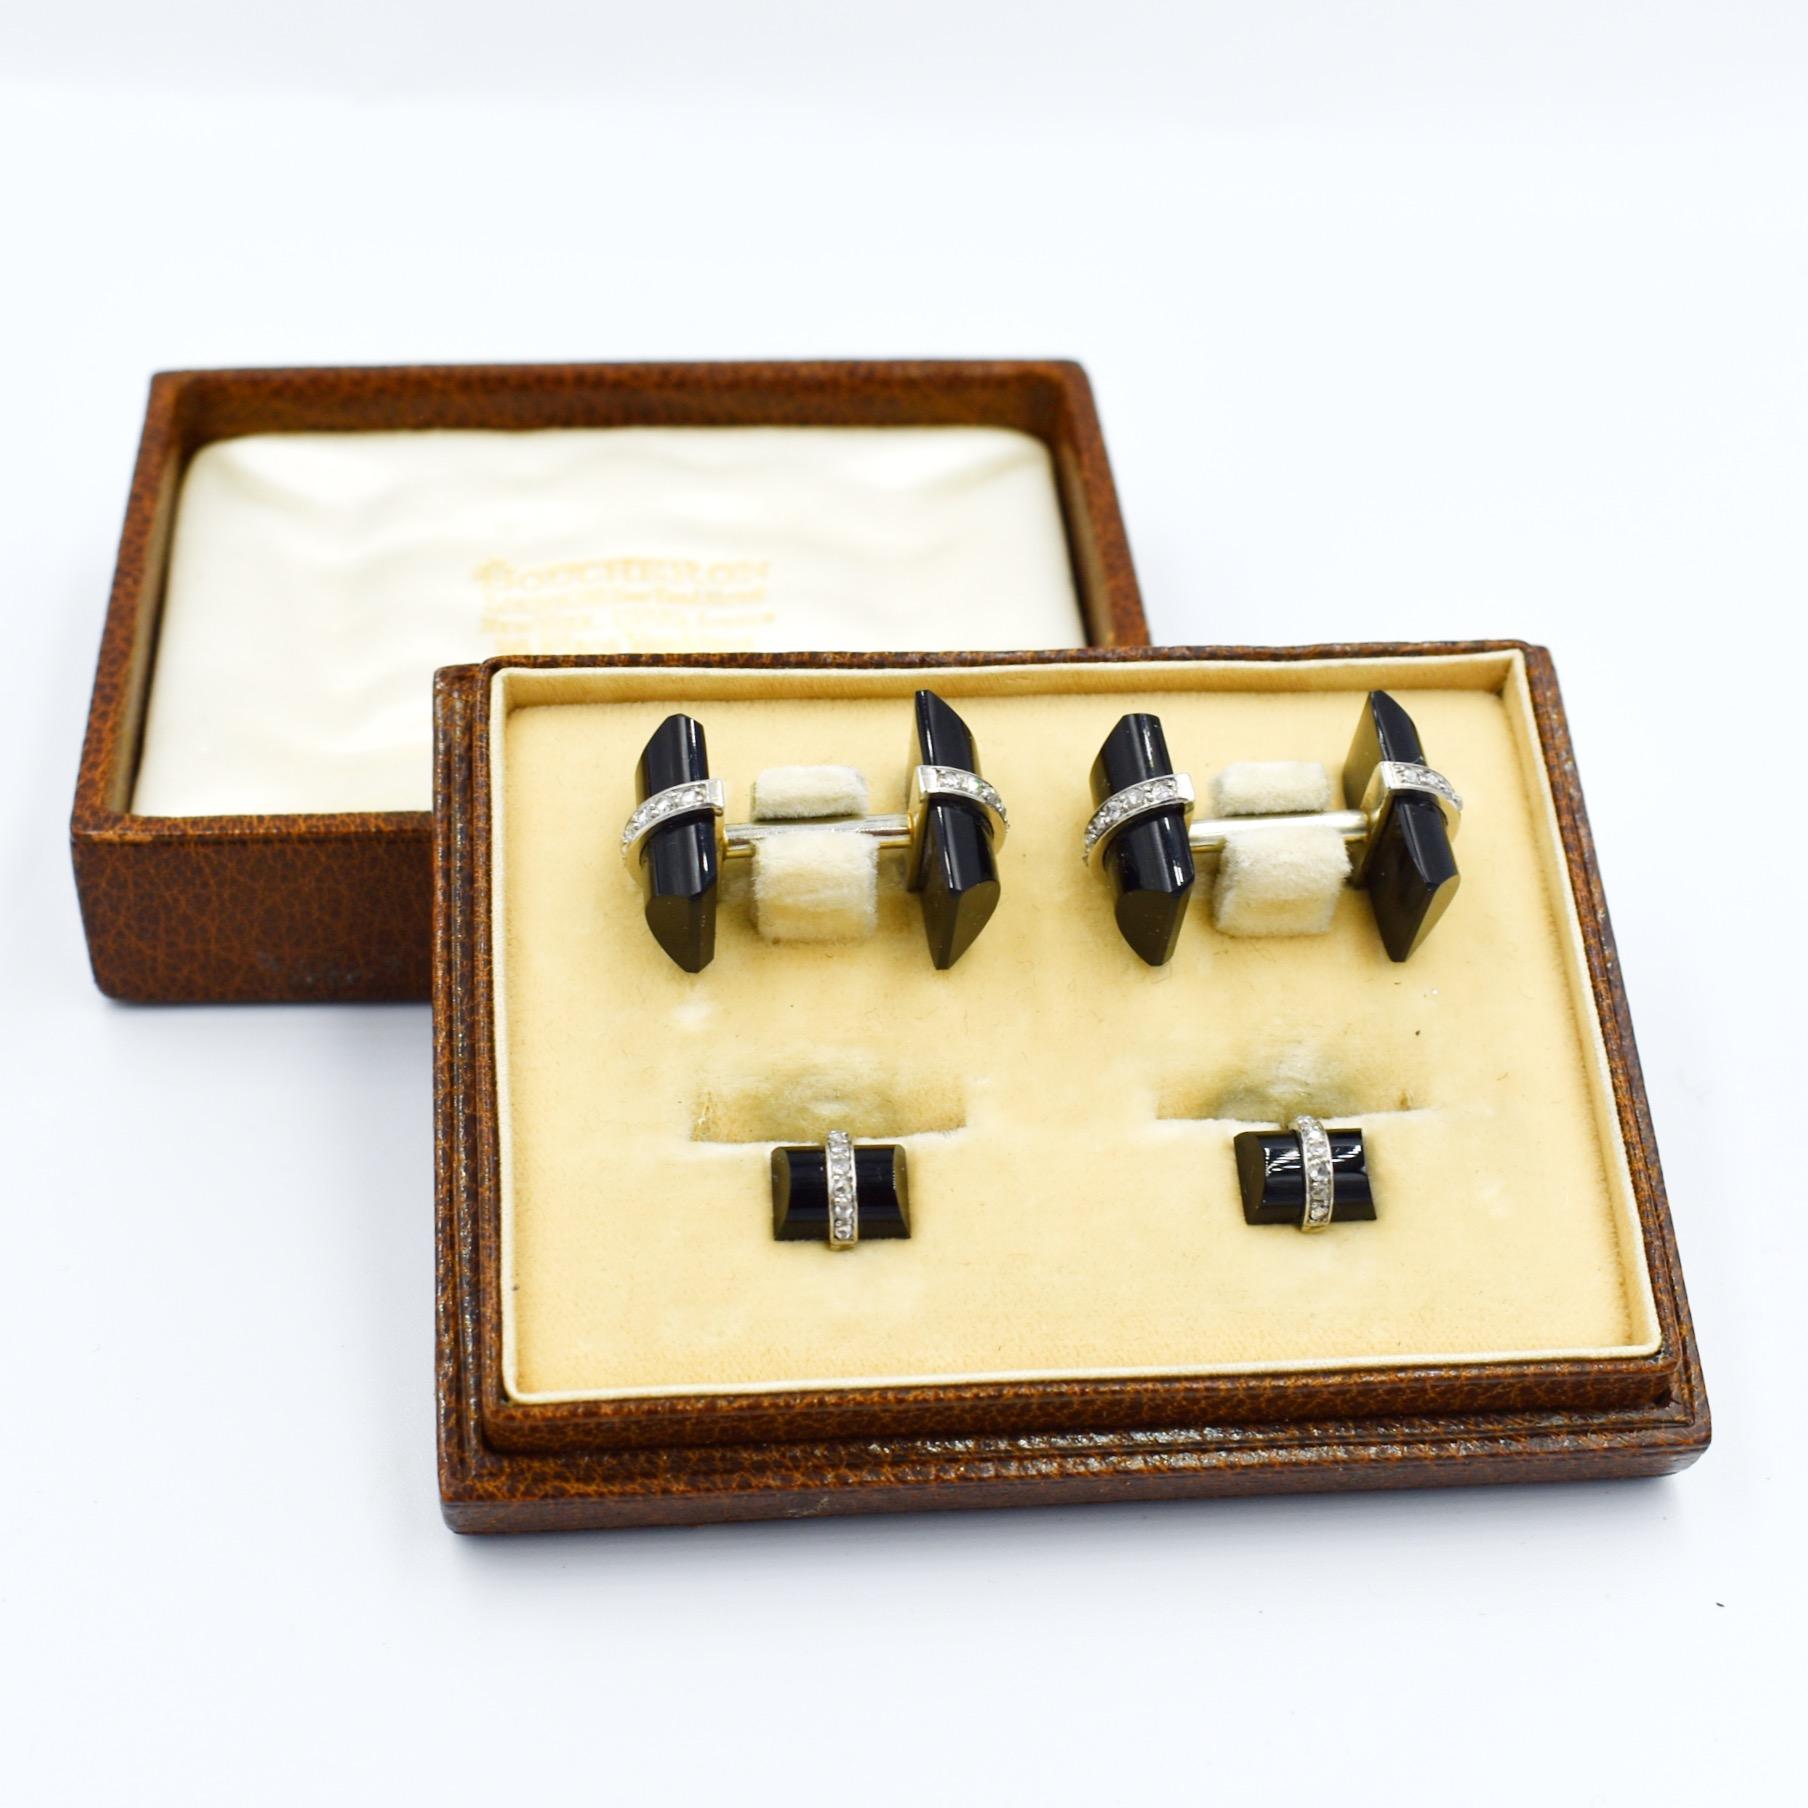 
Ensemble complet de boutons de manchette et de collier de la maison Boucheron Paris, dans leur écrin de cuir d'origine, datant de l'époque Art déco (vers 1920).

Les boutons sont en or blanc 18 carats et en platine, ornés de diamants. Les bâtons